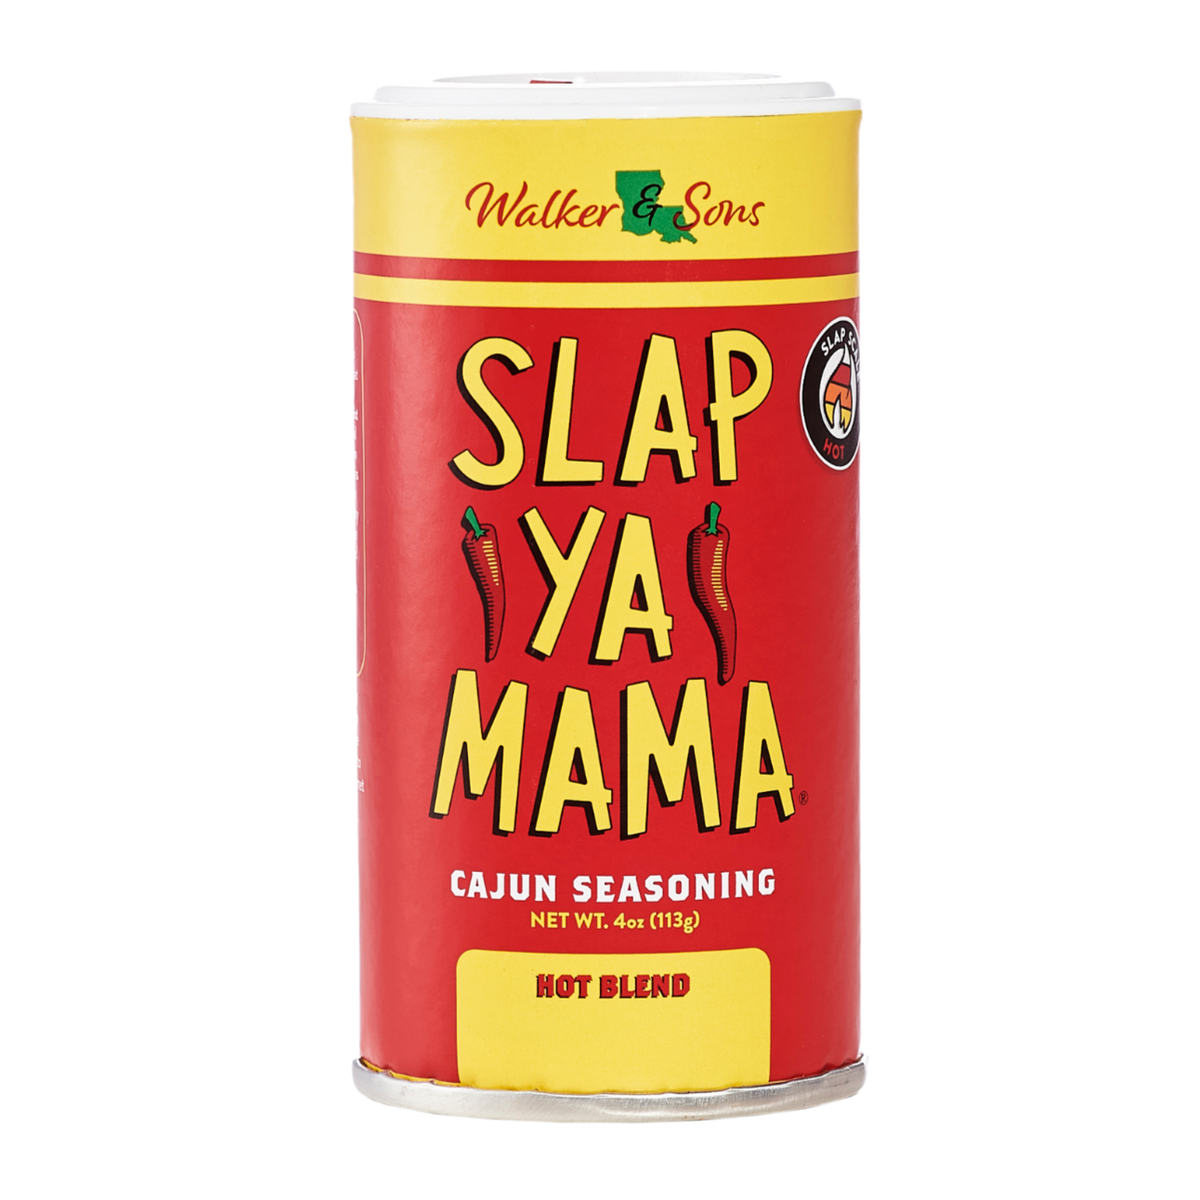 Slap Ya Mama Hot Blend Cajun Seasonimg, 8 oz - Harris Teeter